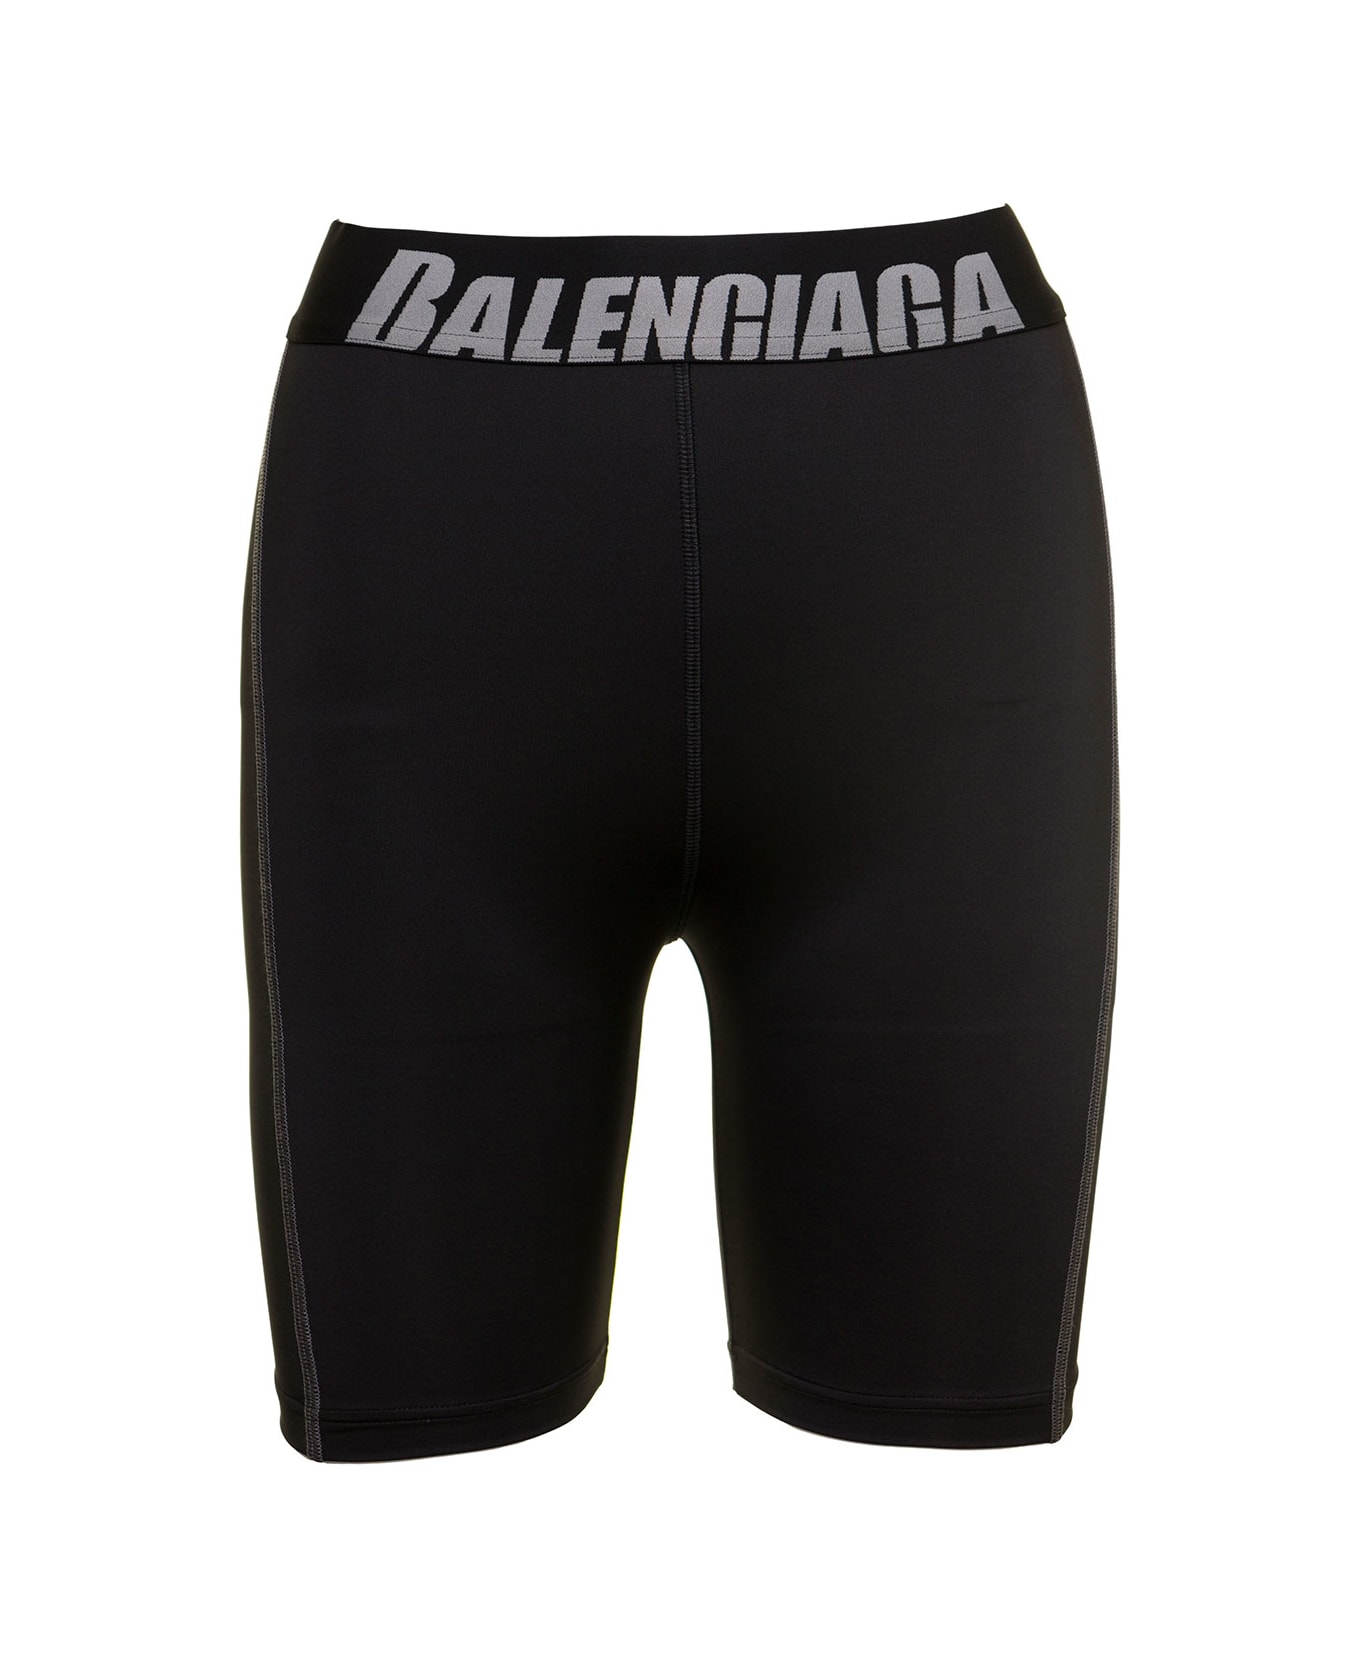 Balenciaga Cycling Shorts Spandex - Black